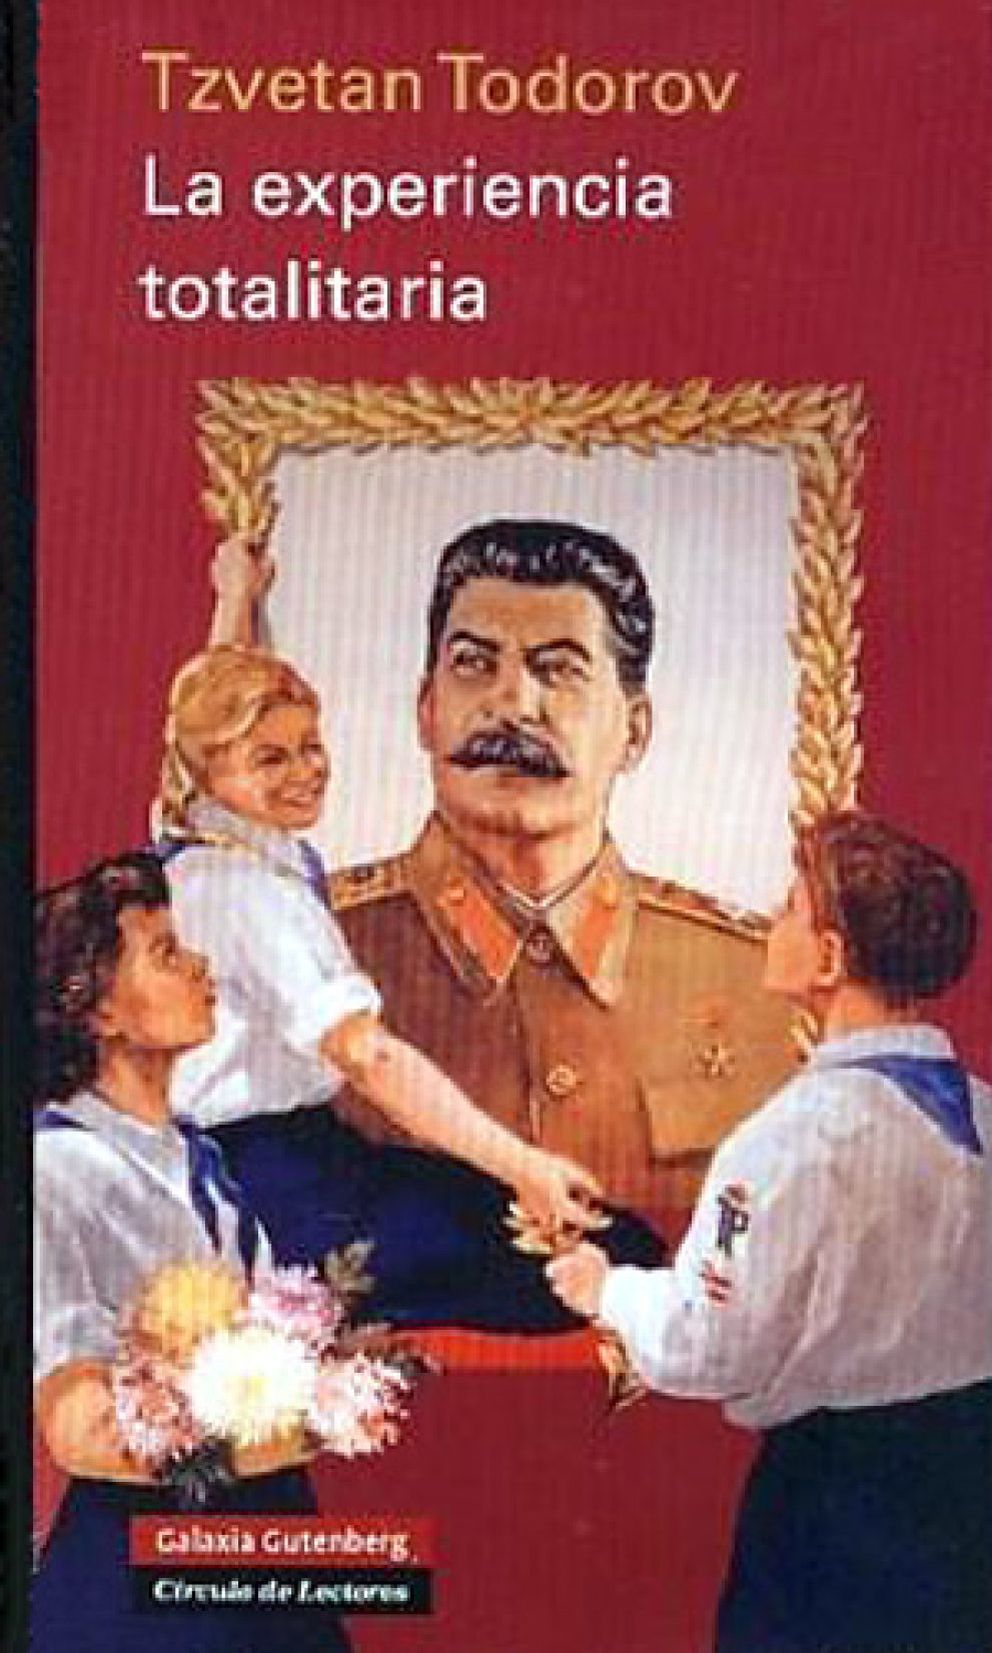 Foto: La experiencia totalitaria: el poder como reunión de cínicos arribistas